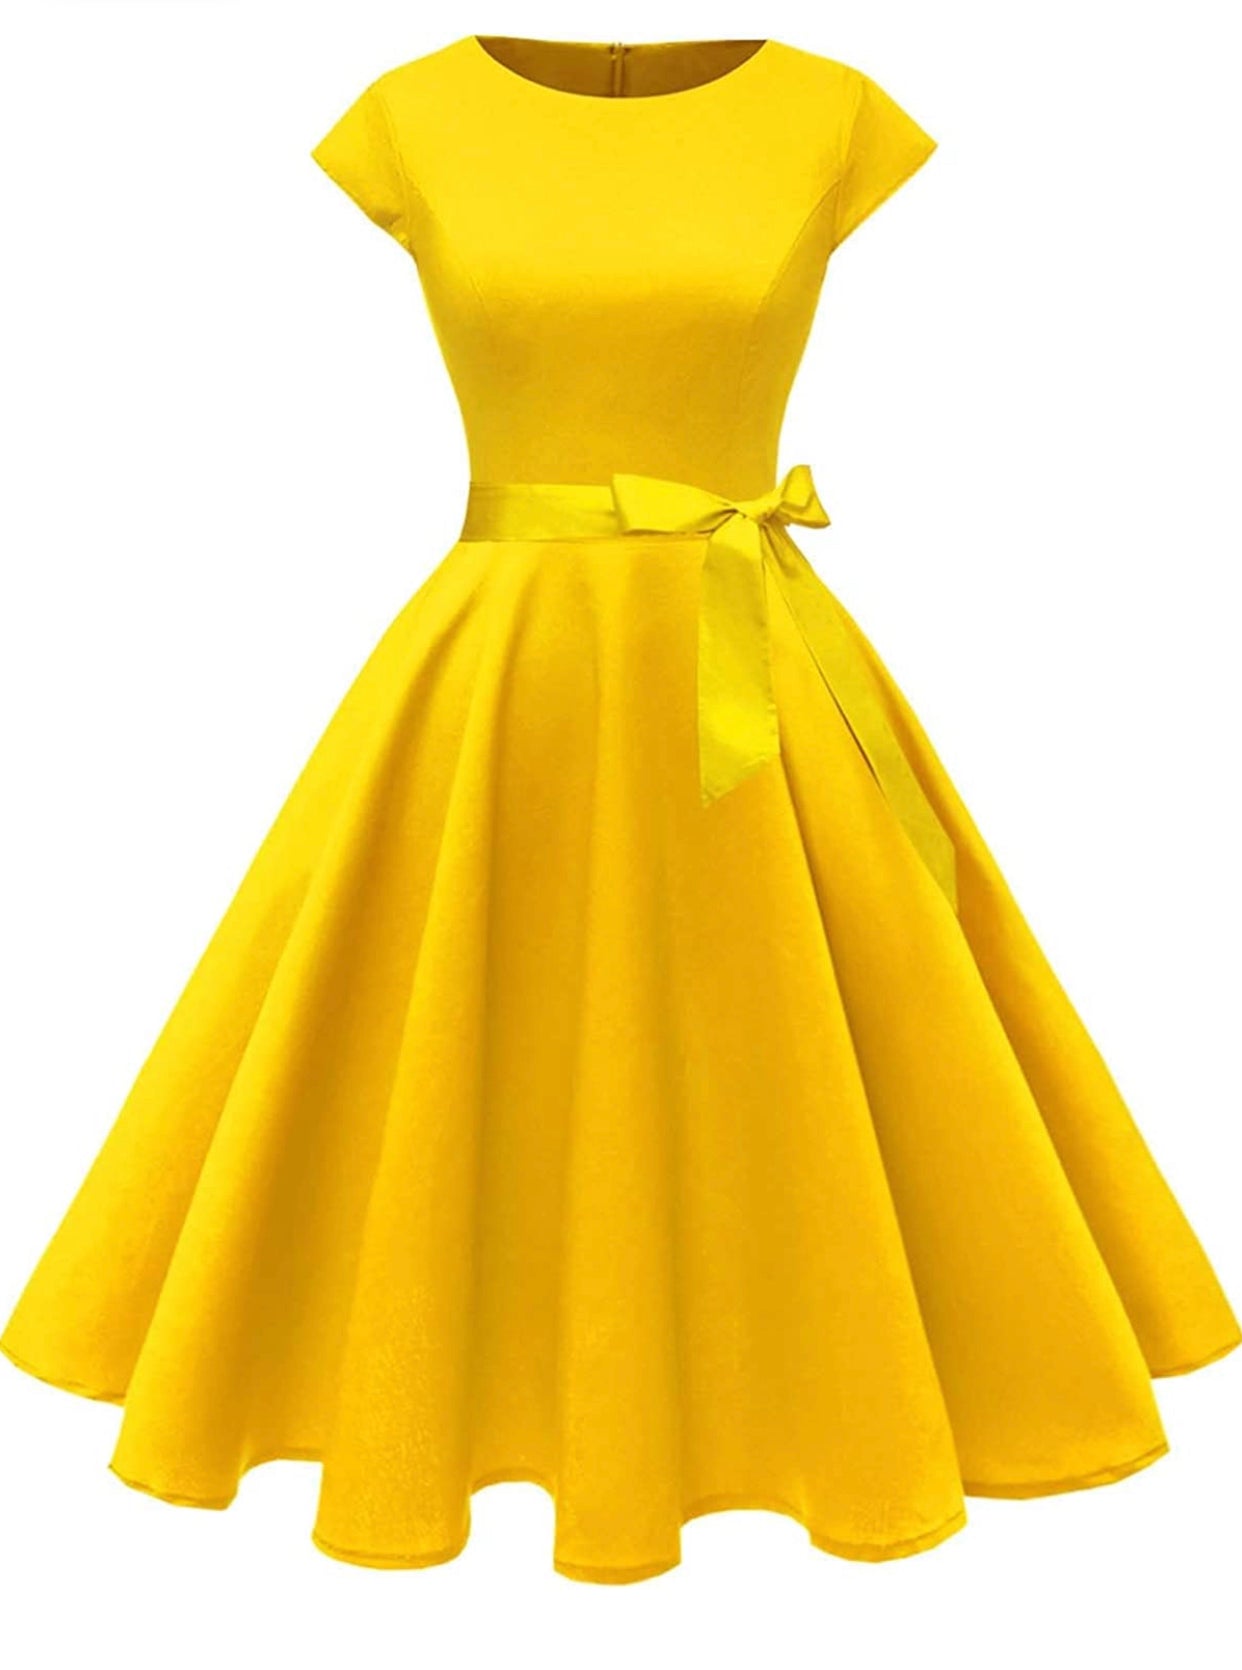 Gold Boatneck Cap Sleeve Swing Dress, Sizes XSmall - 3XLarge (US 0 - 18)